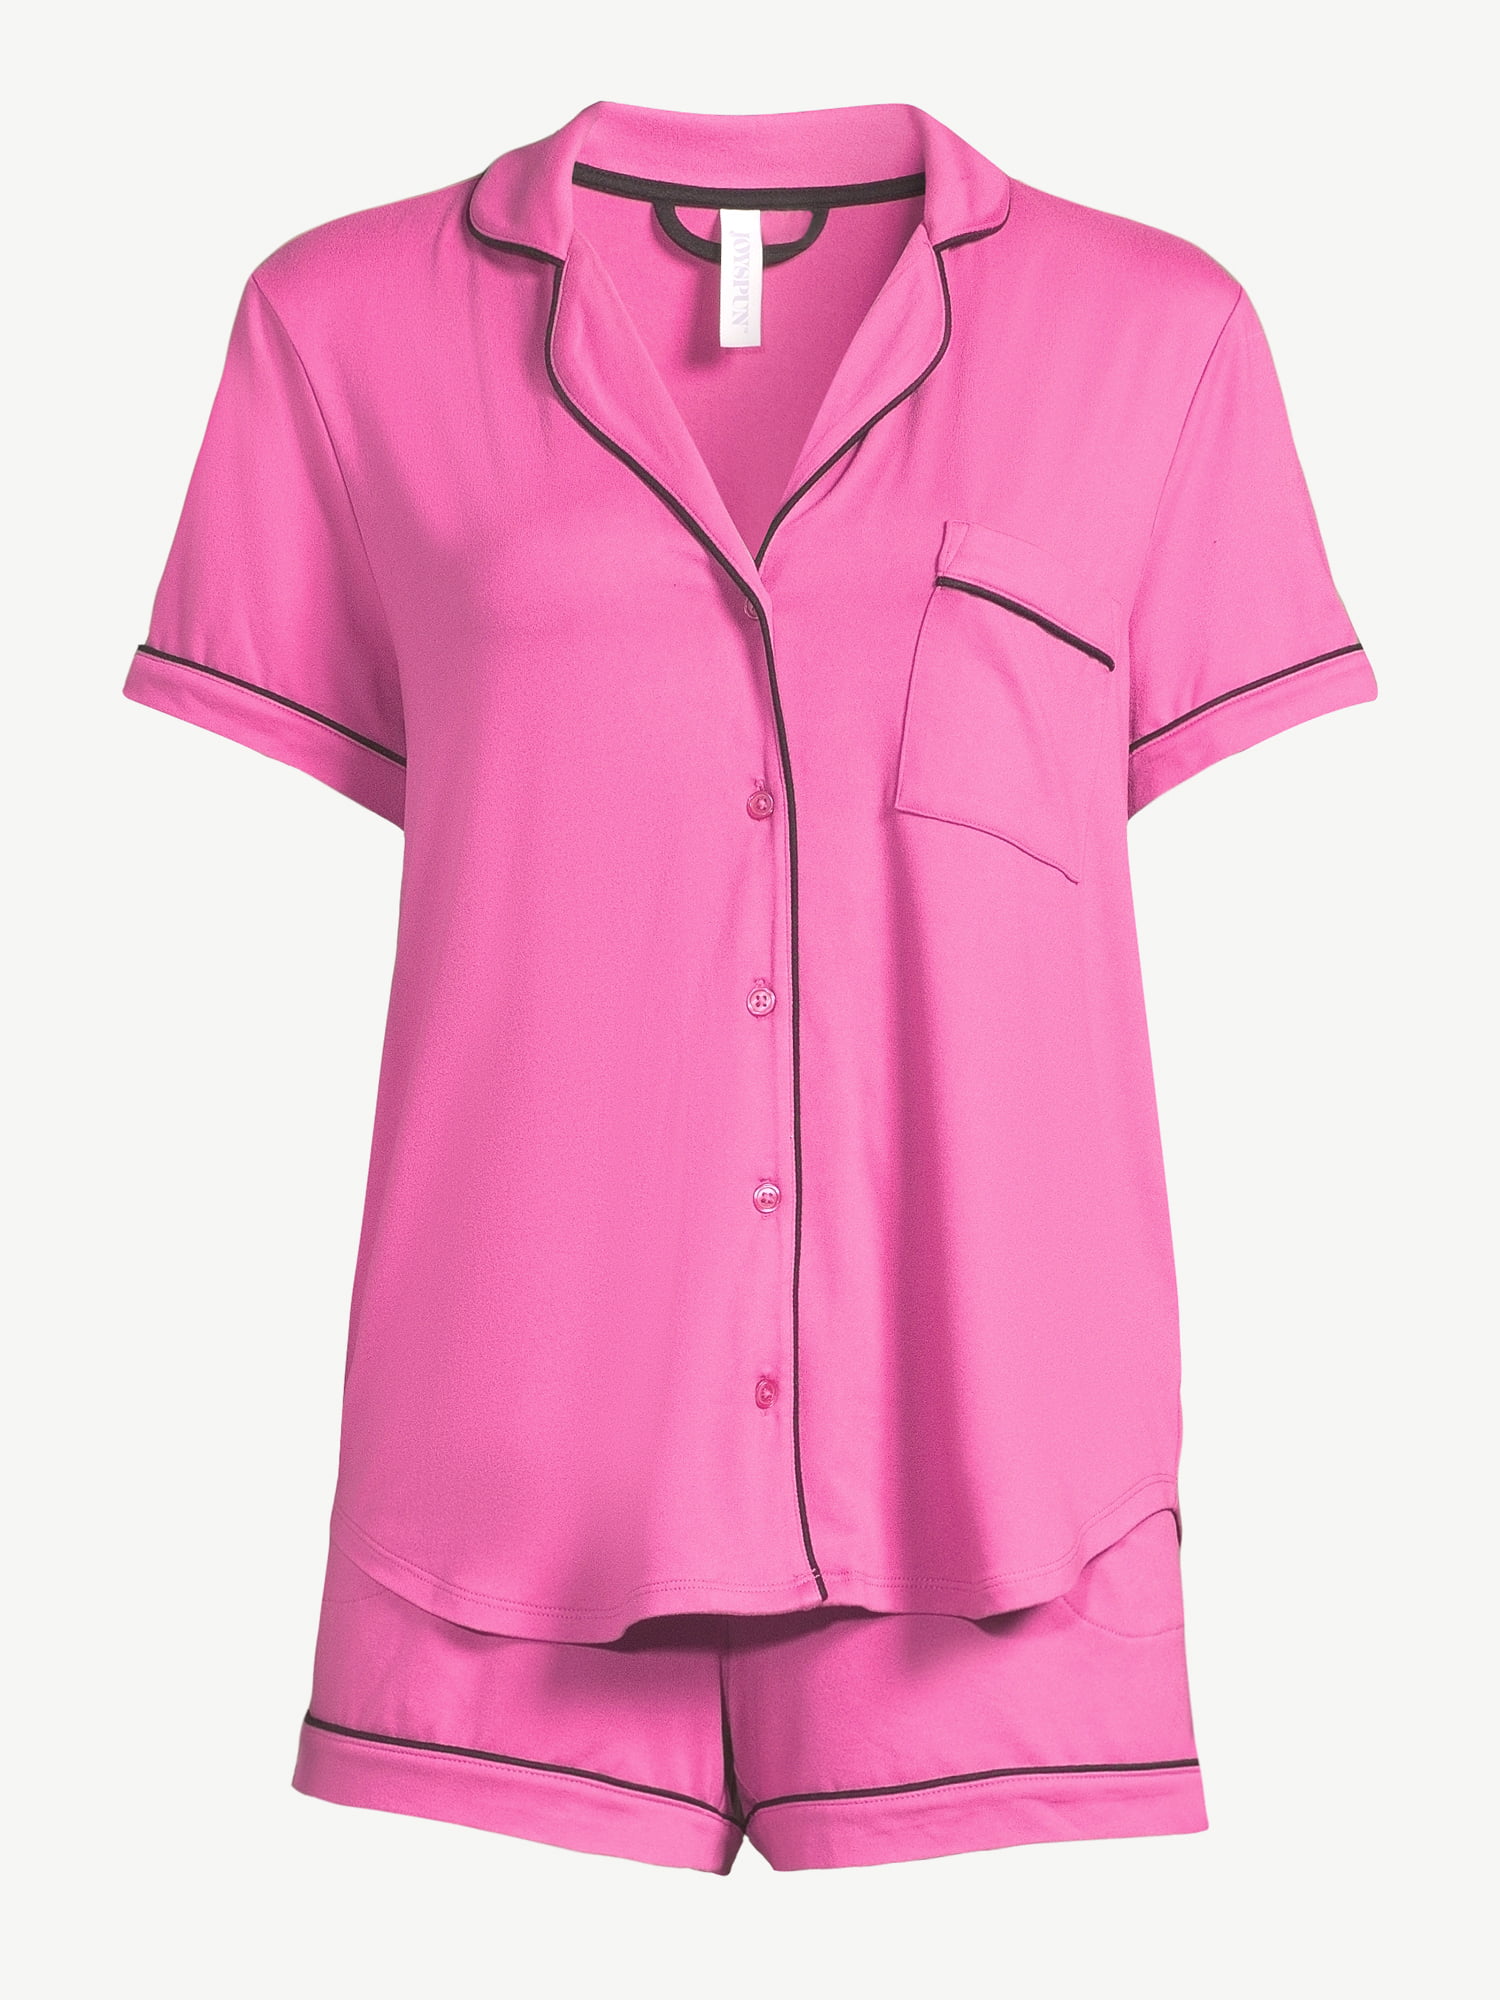  KAKAYO New Women Pajamas Sets Spring Short Sleeve